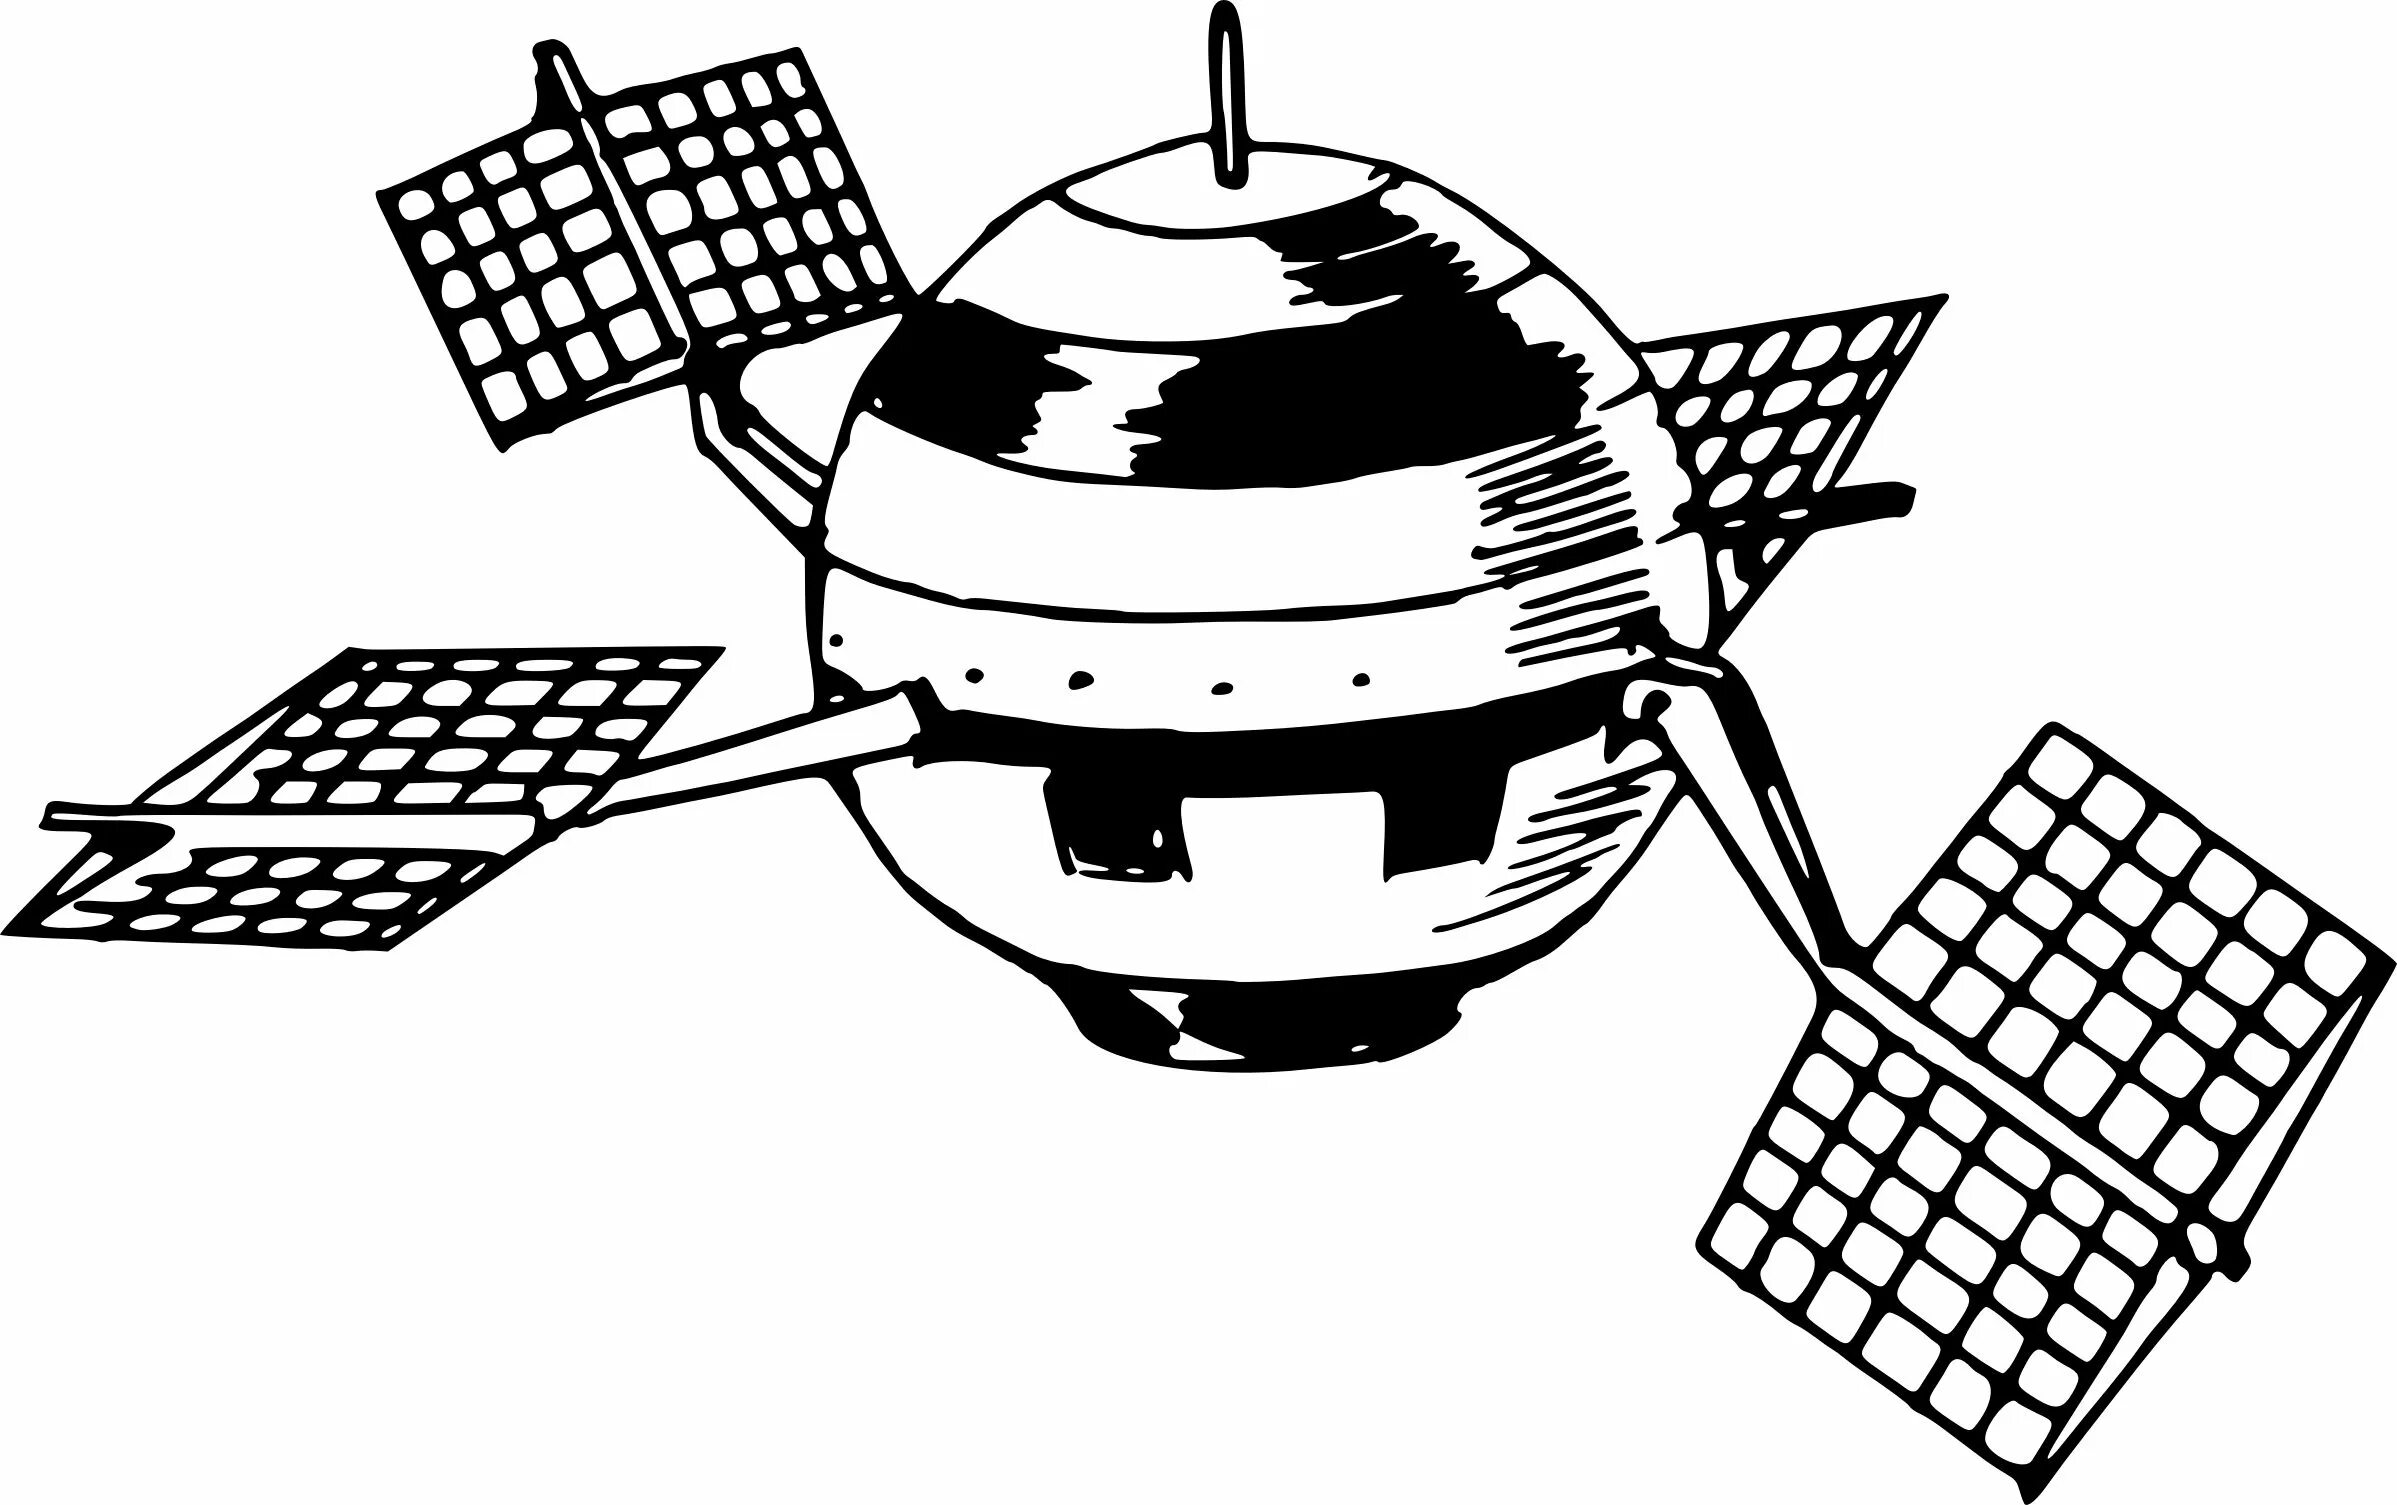 Рисунок спутника в космосе. Космический Спутник вектор. Изображения космических аппаратов. Спутник рисунок. Спутник для детей.